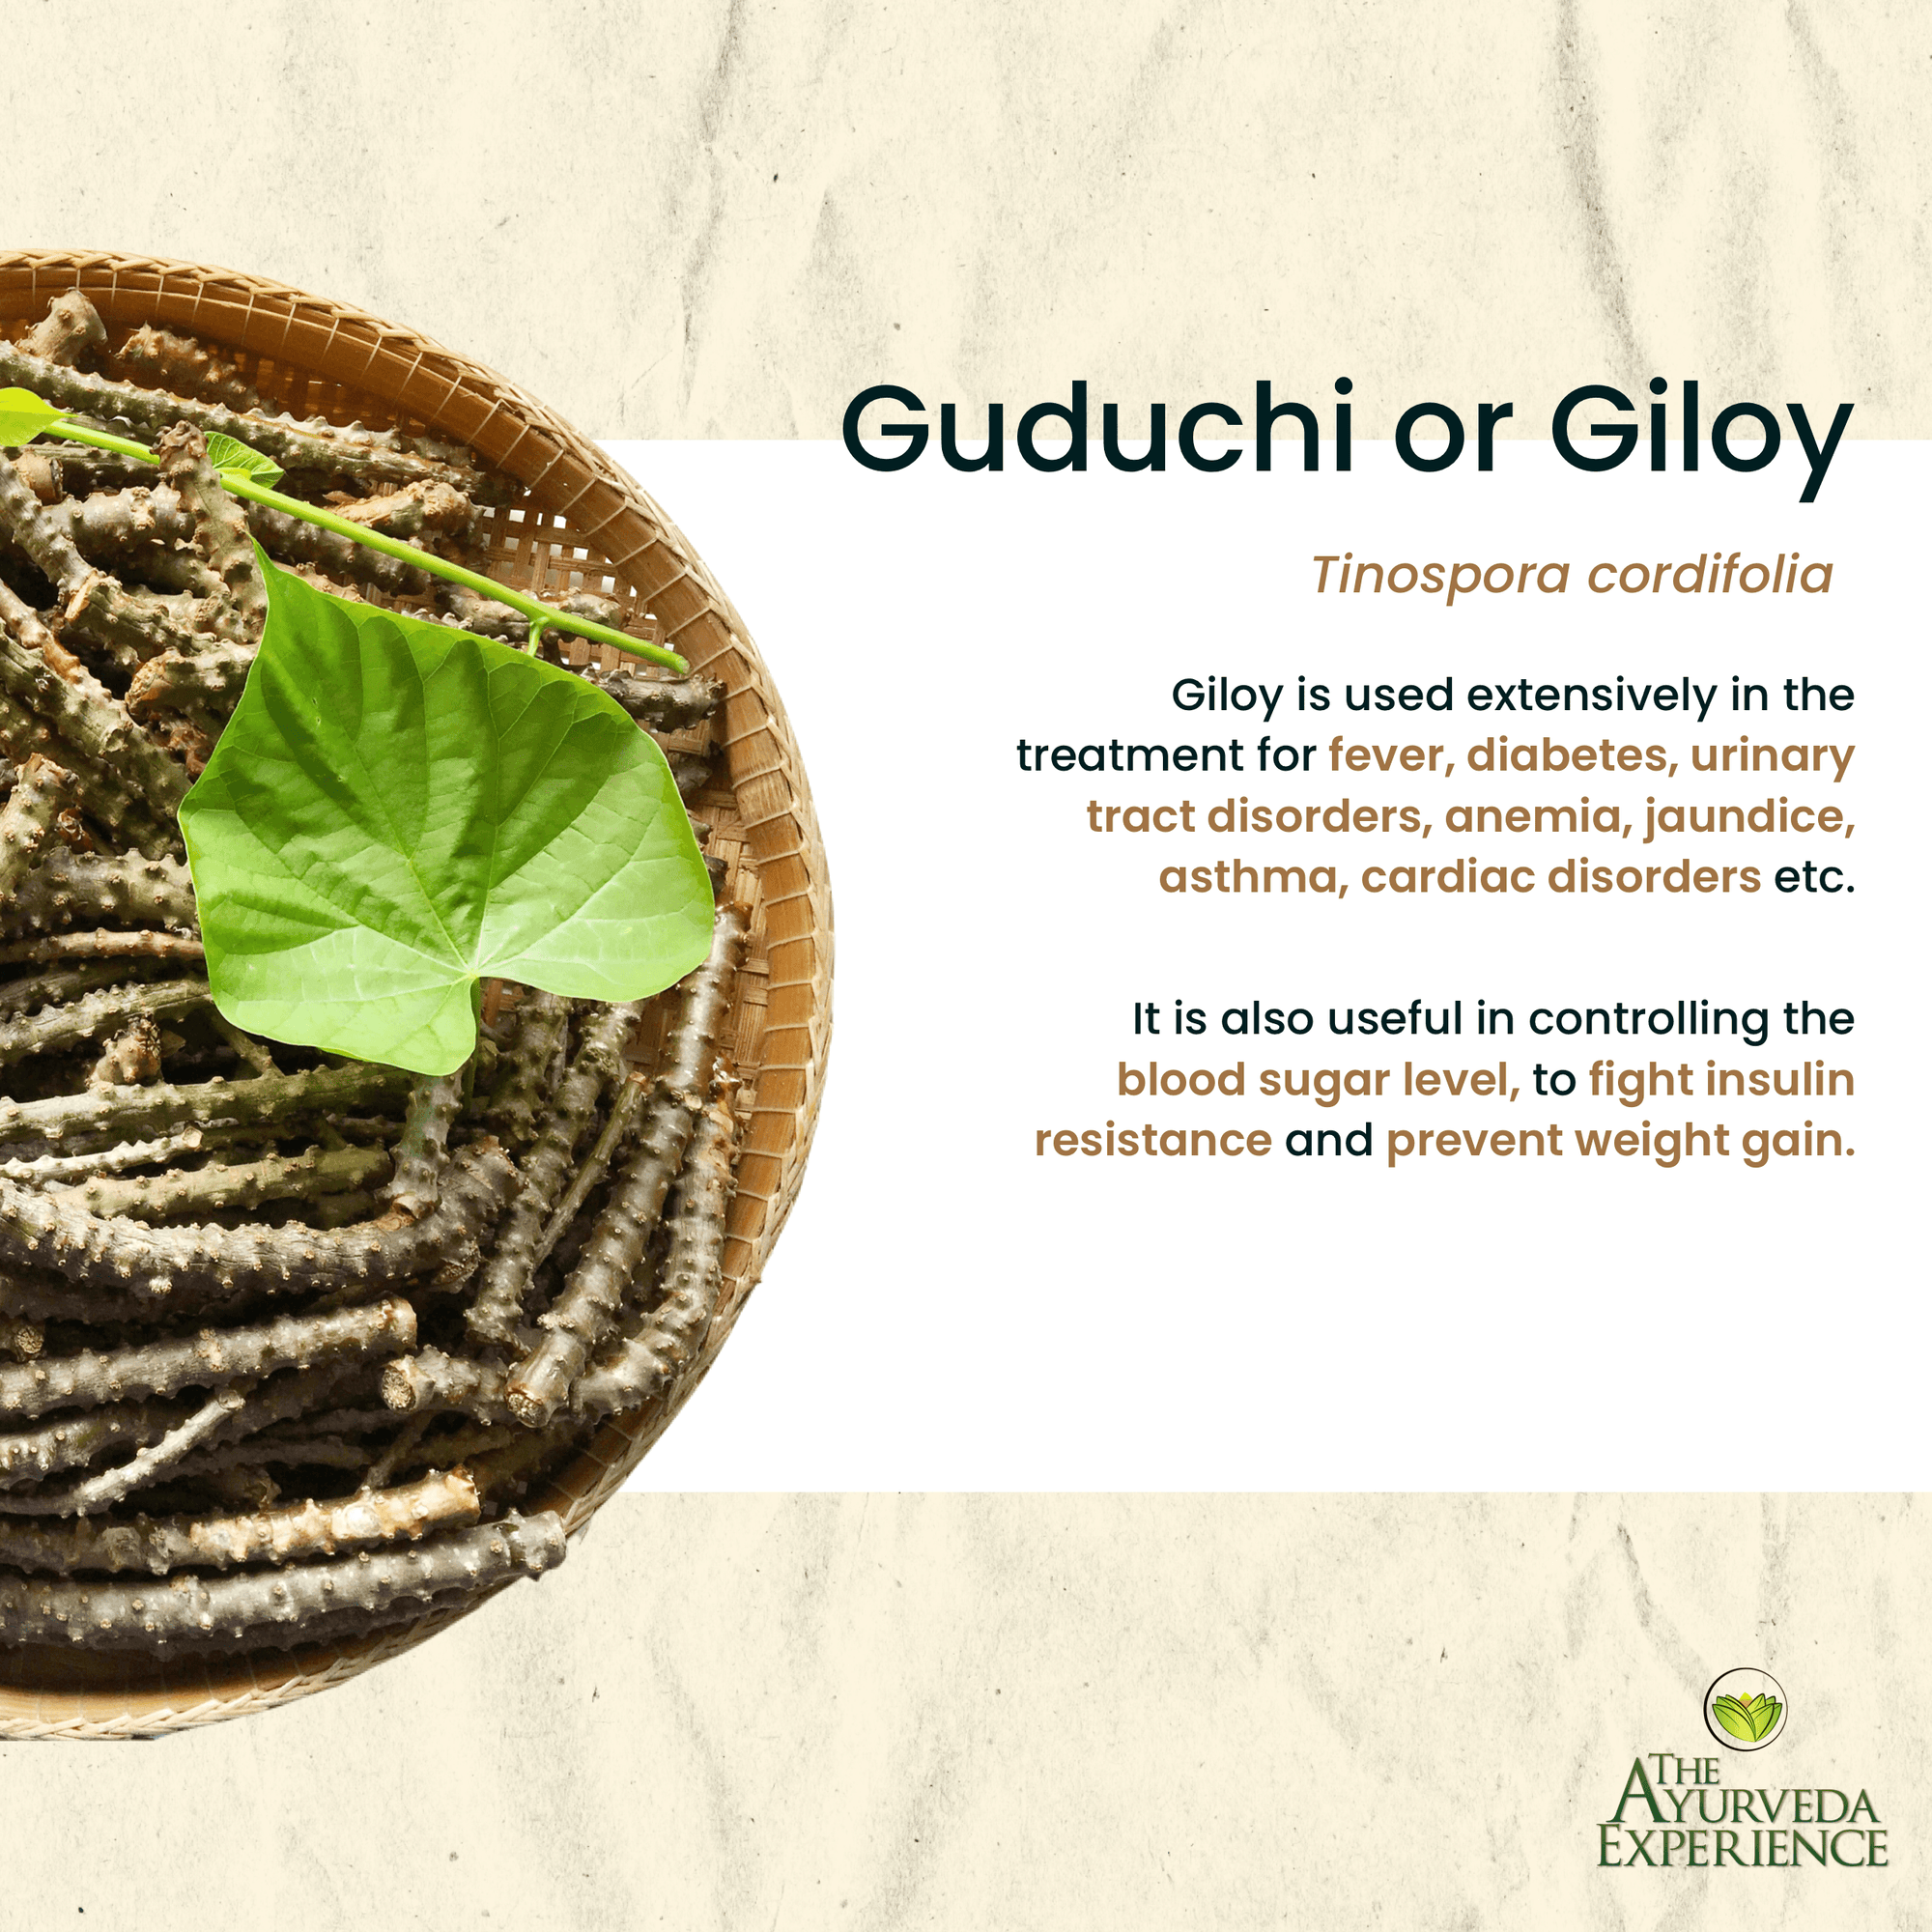 All About Guduchi